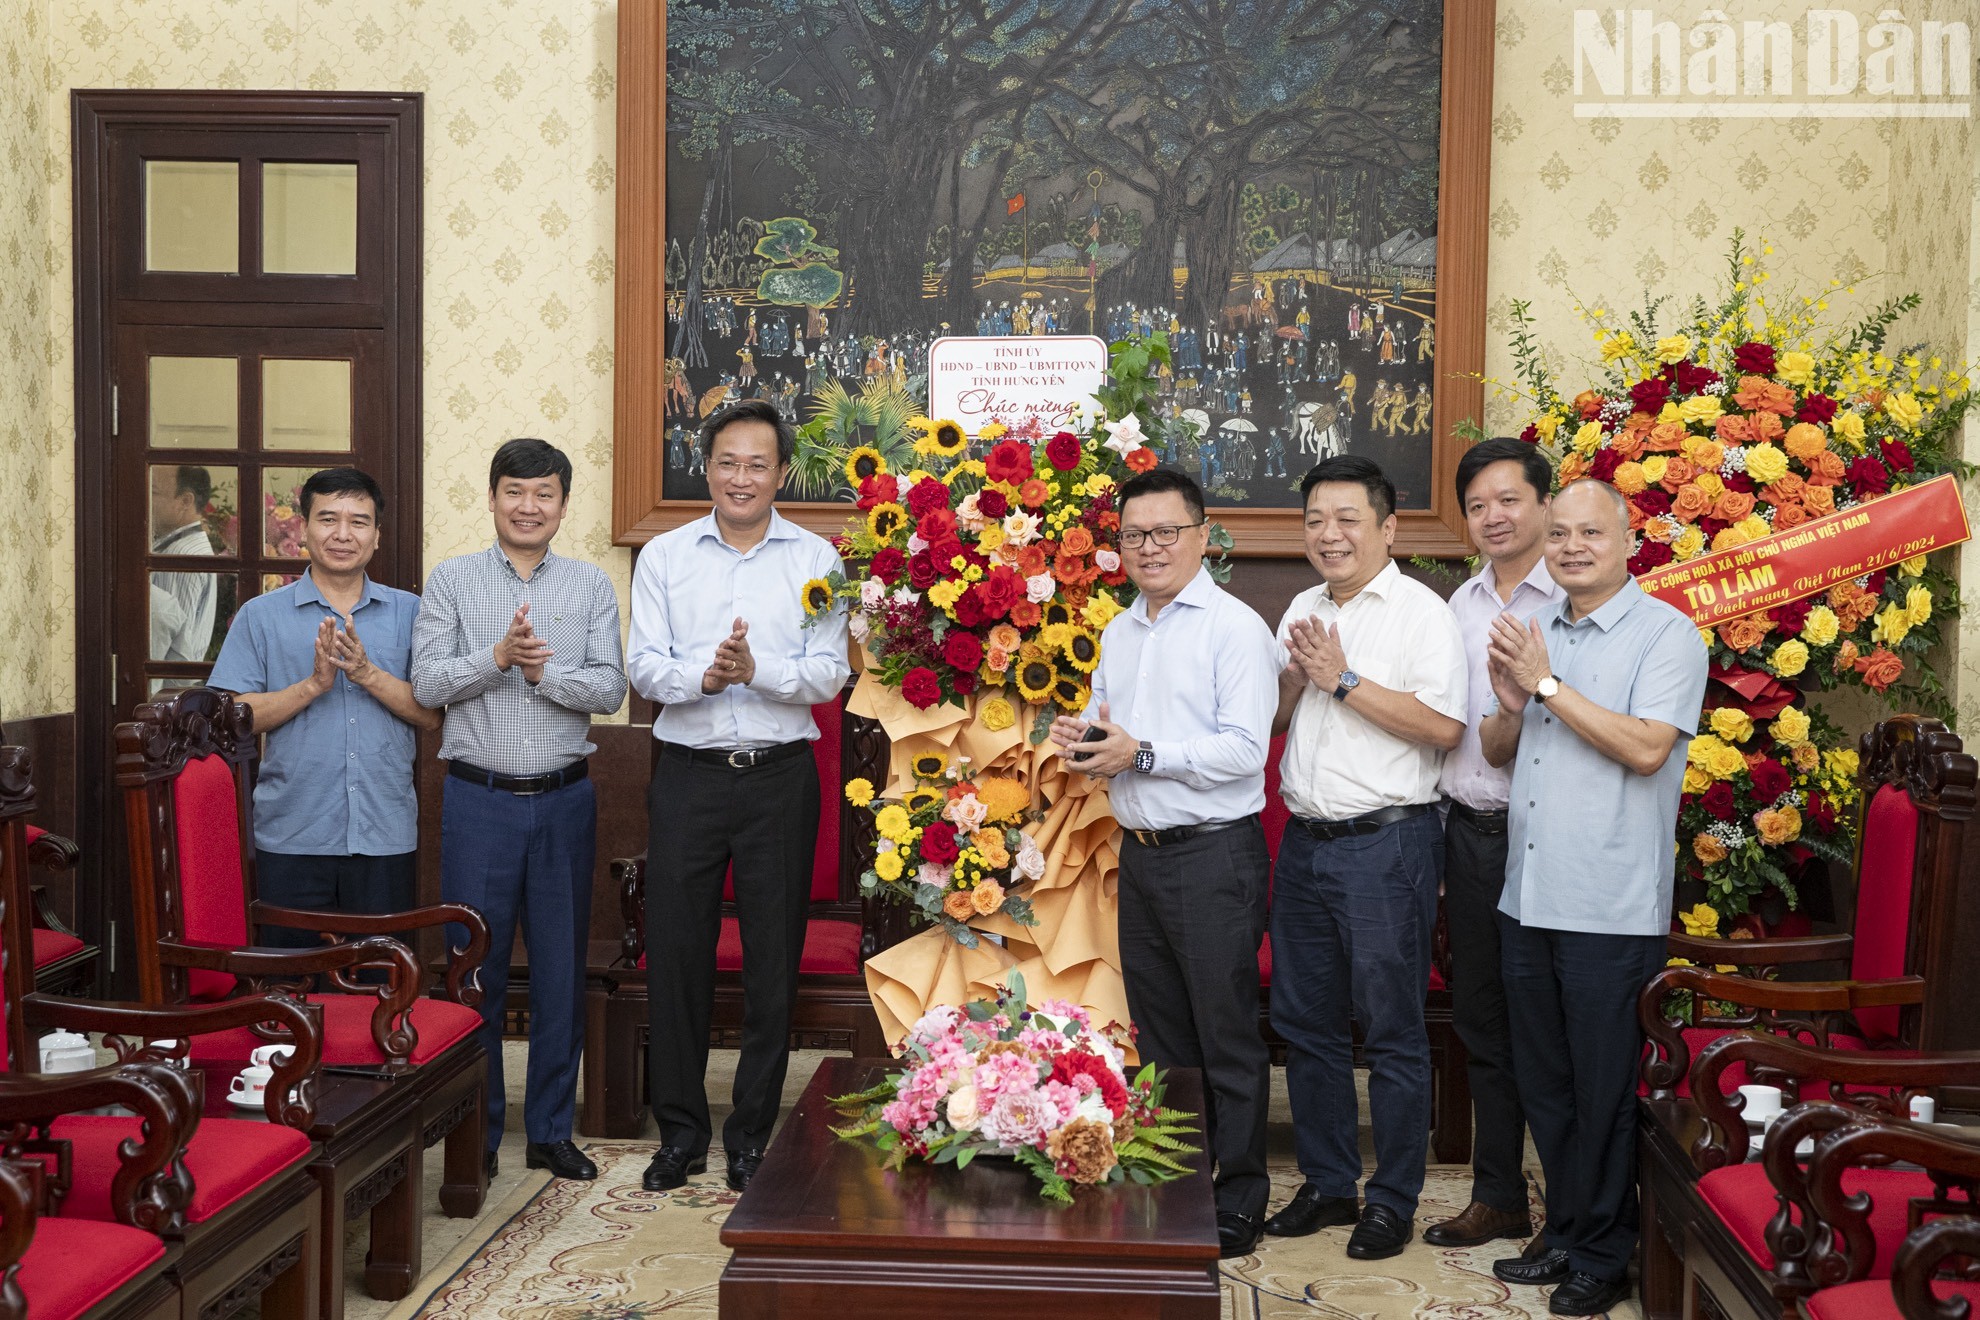 Делегации многих учреждений и подразделений поздравили газету «Нянзан» с праздником